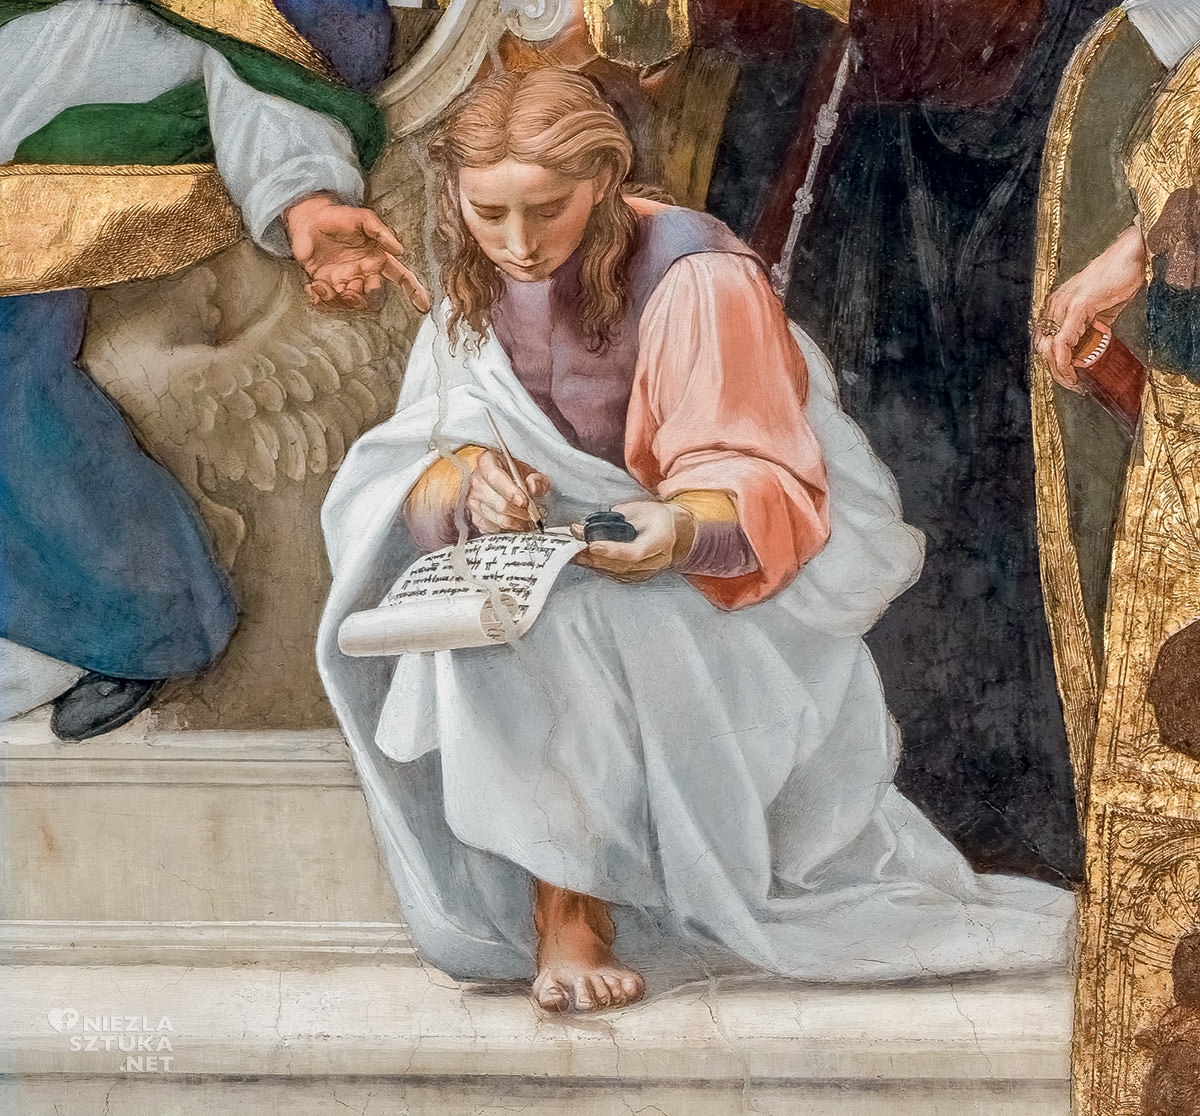 Stanze Watykańskie, Rafael Santi, Dysputa o Najświętszym Sakramencie, fresk, niezła sztuka